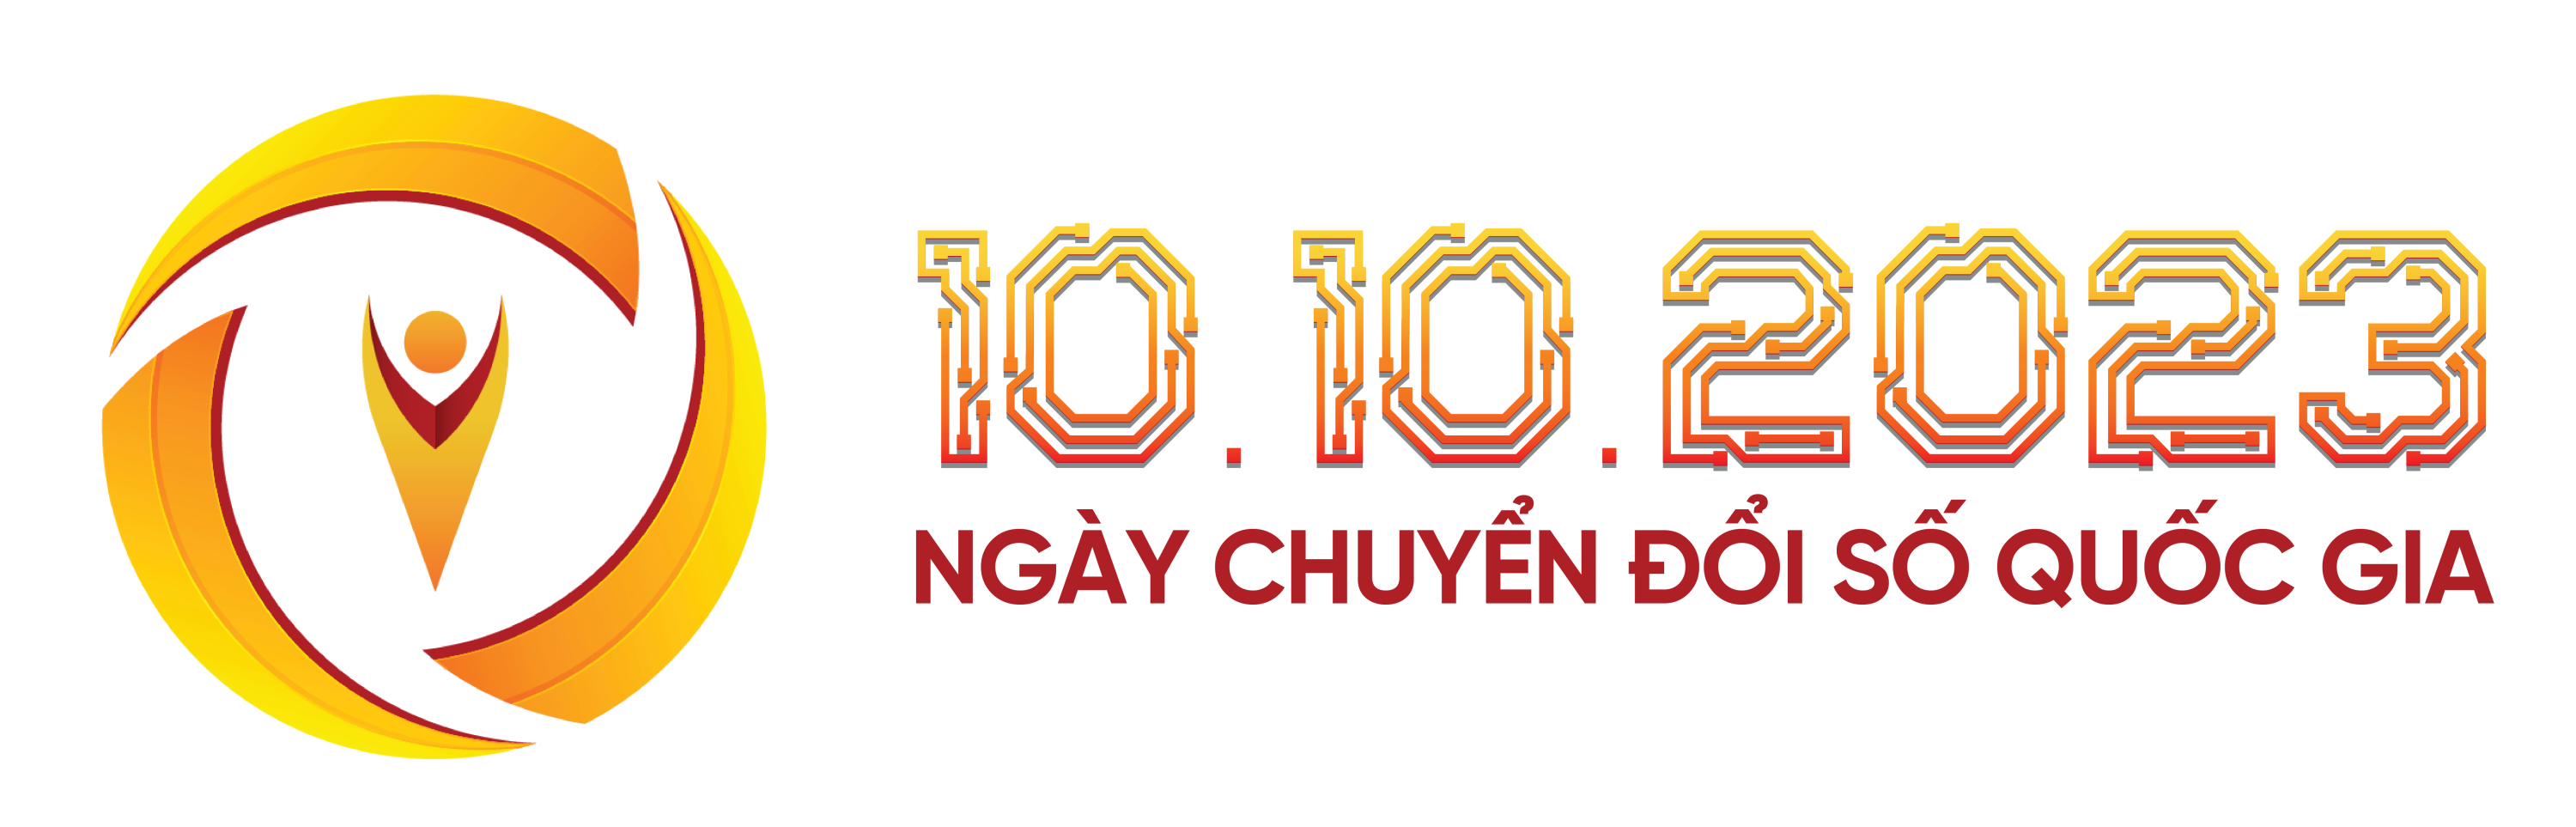 logo chuyen doi so 01